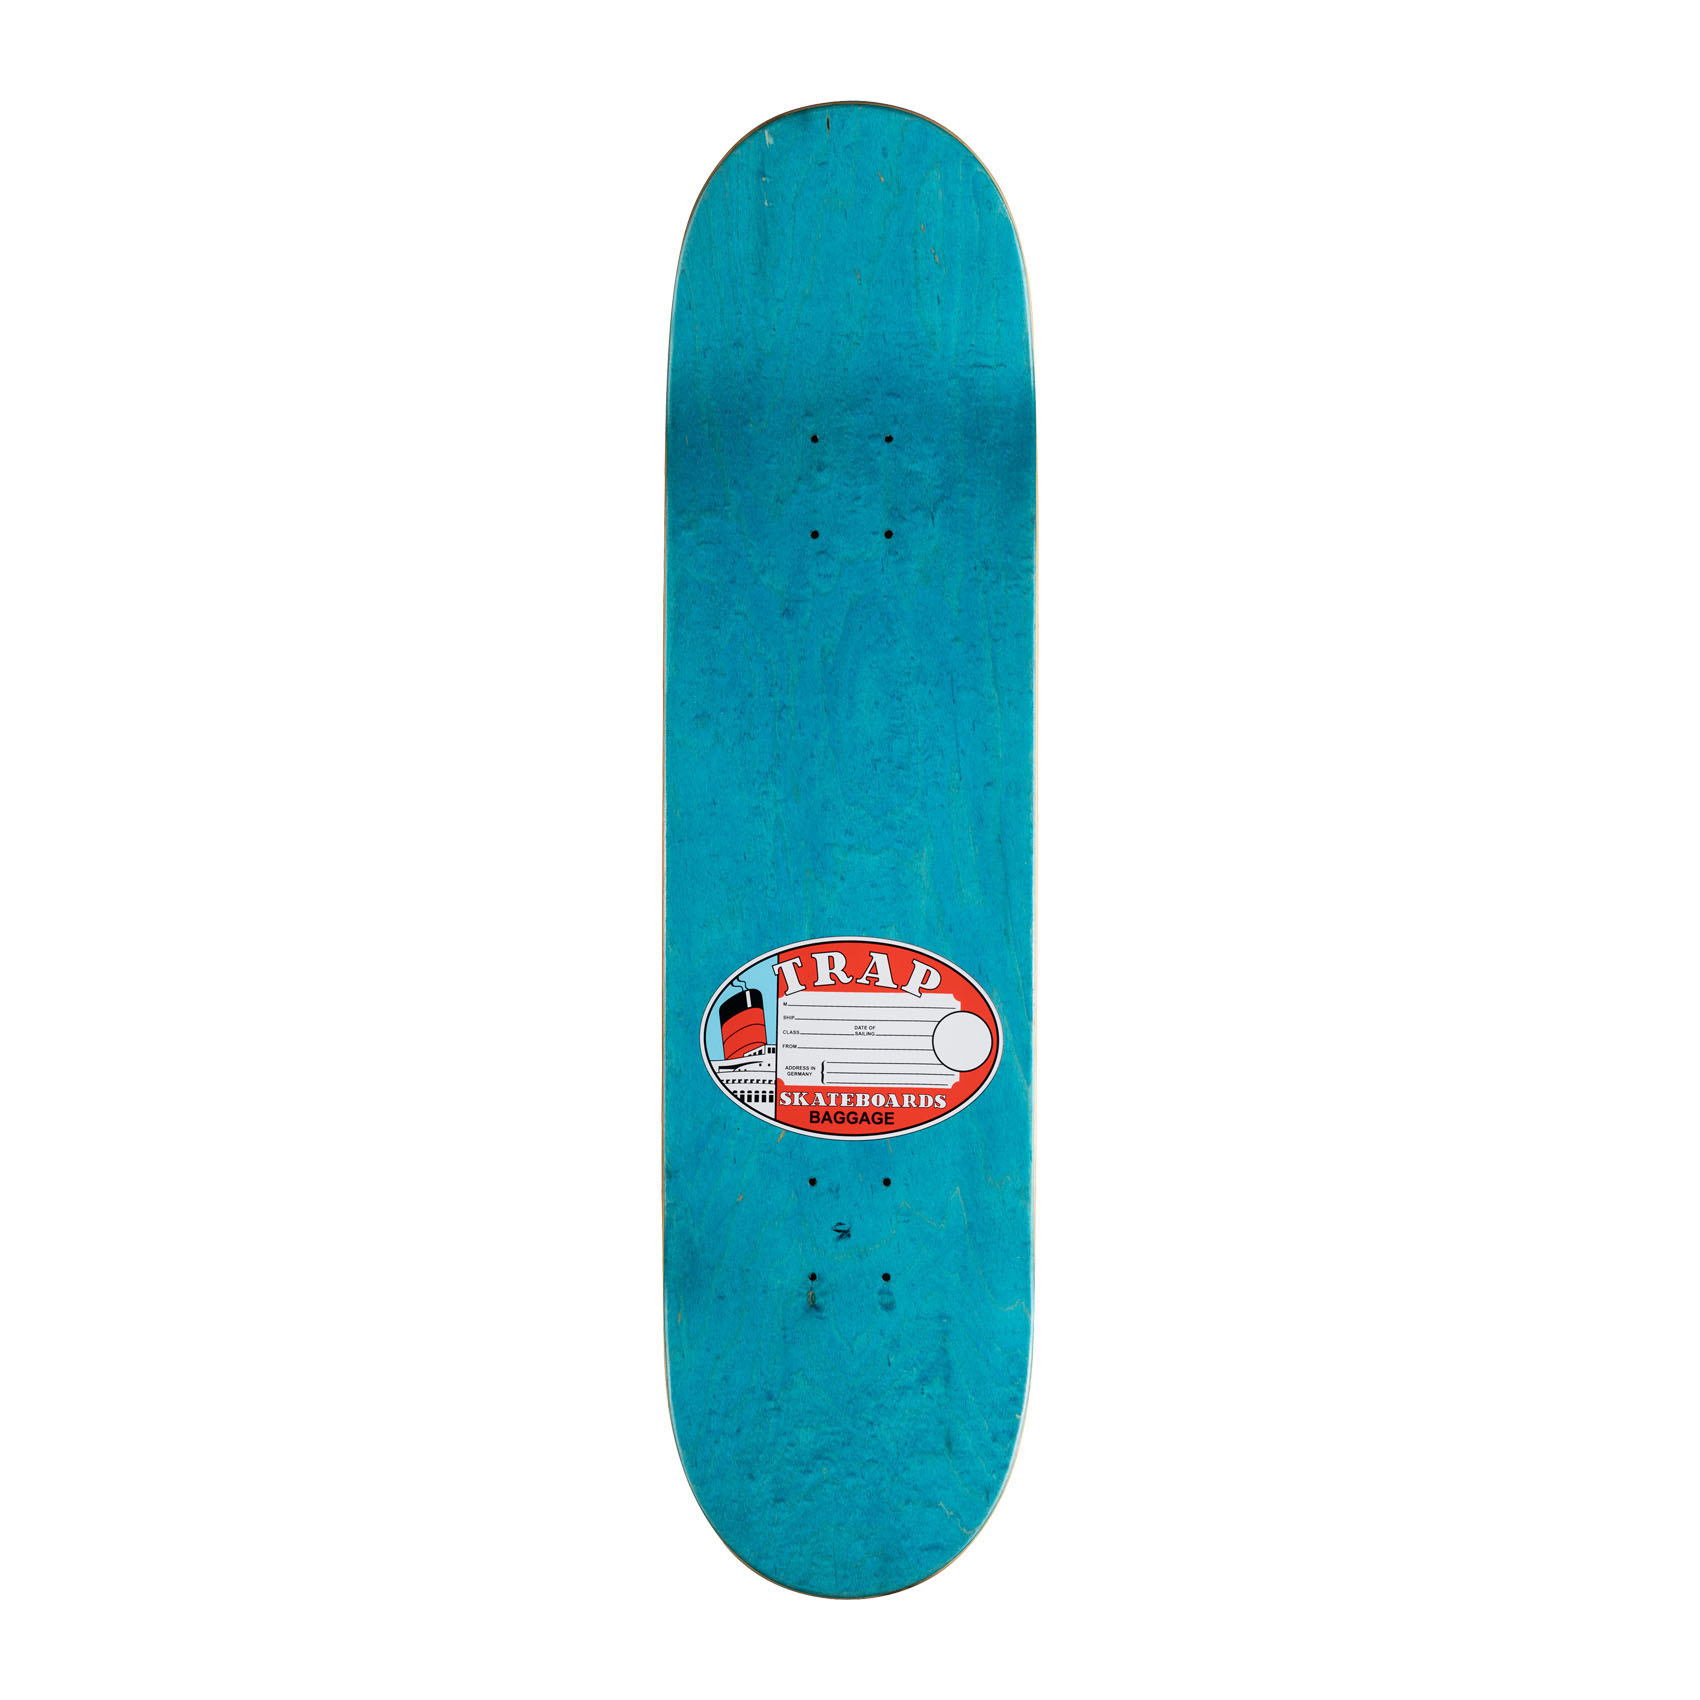 Trap Skateboard Deck Ship Pascal Reif 8.125" (white)